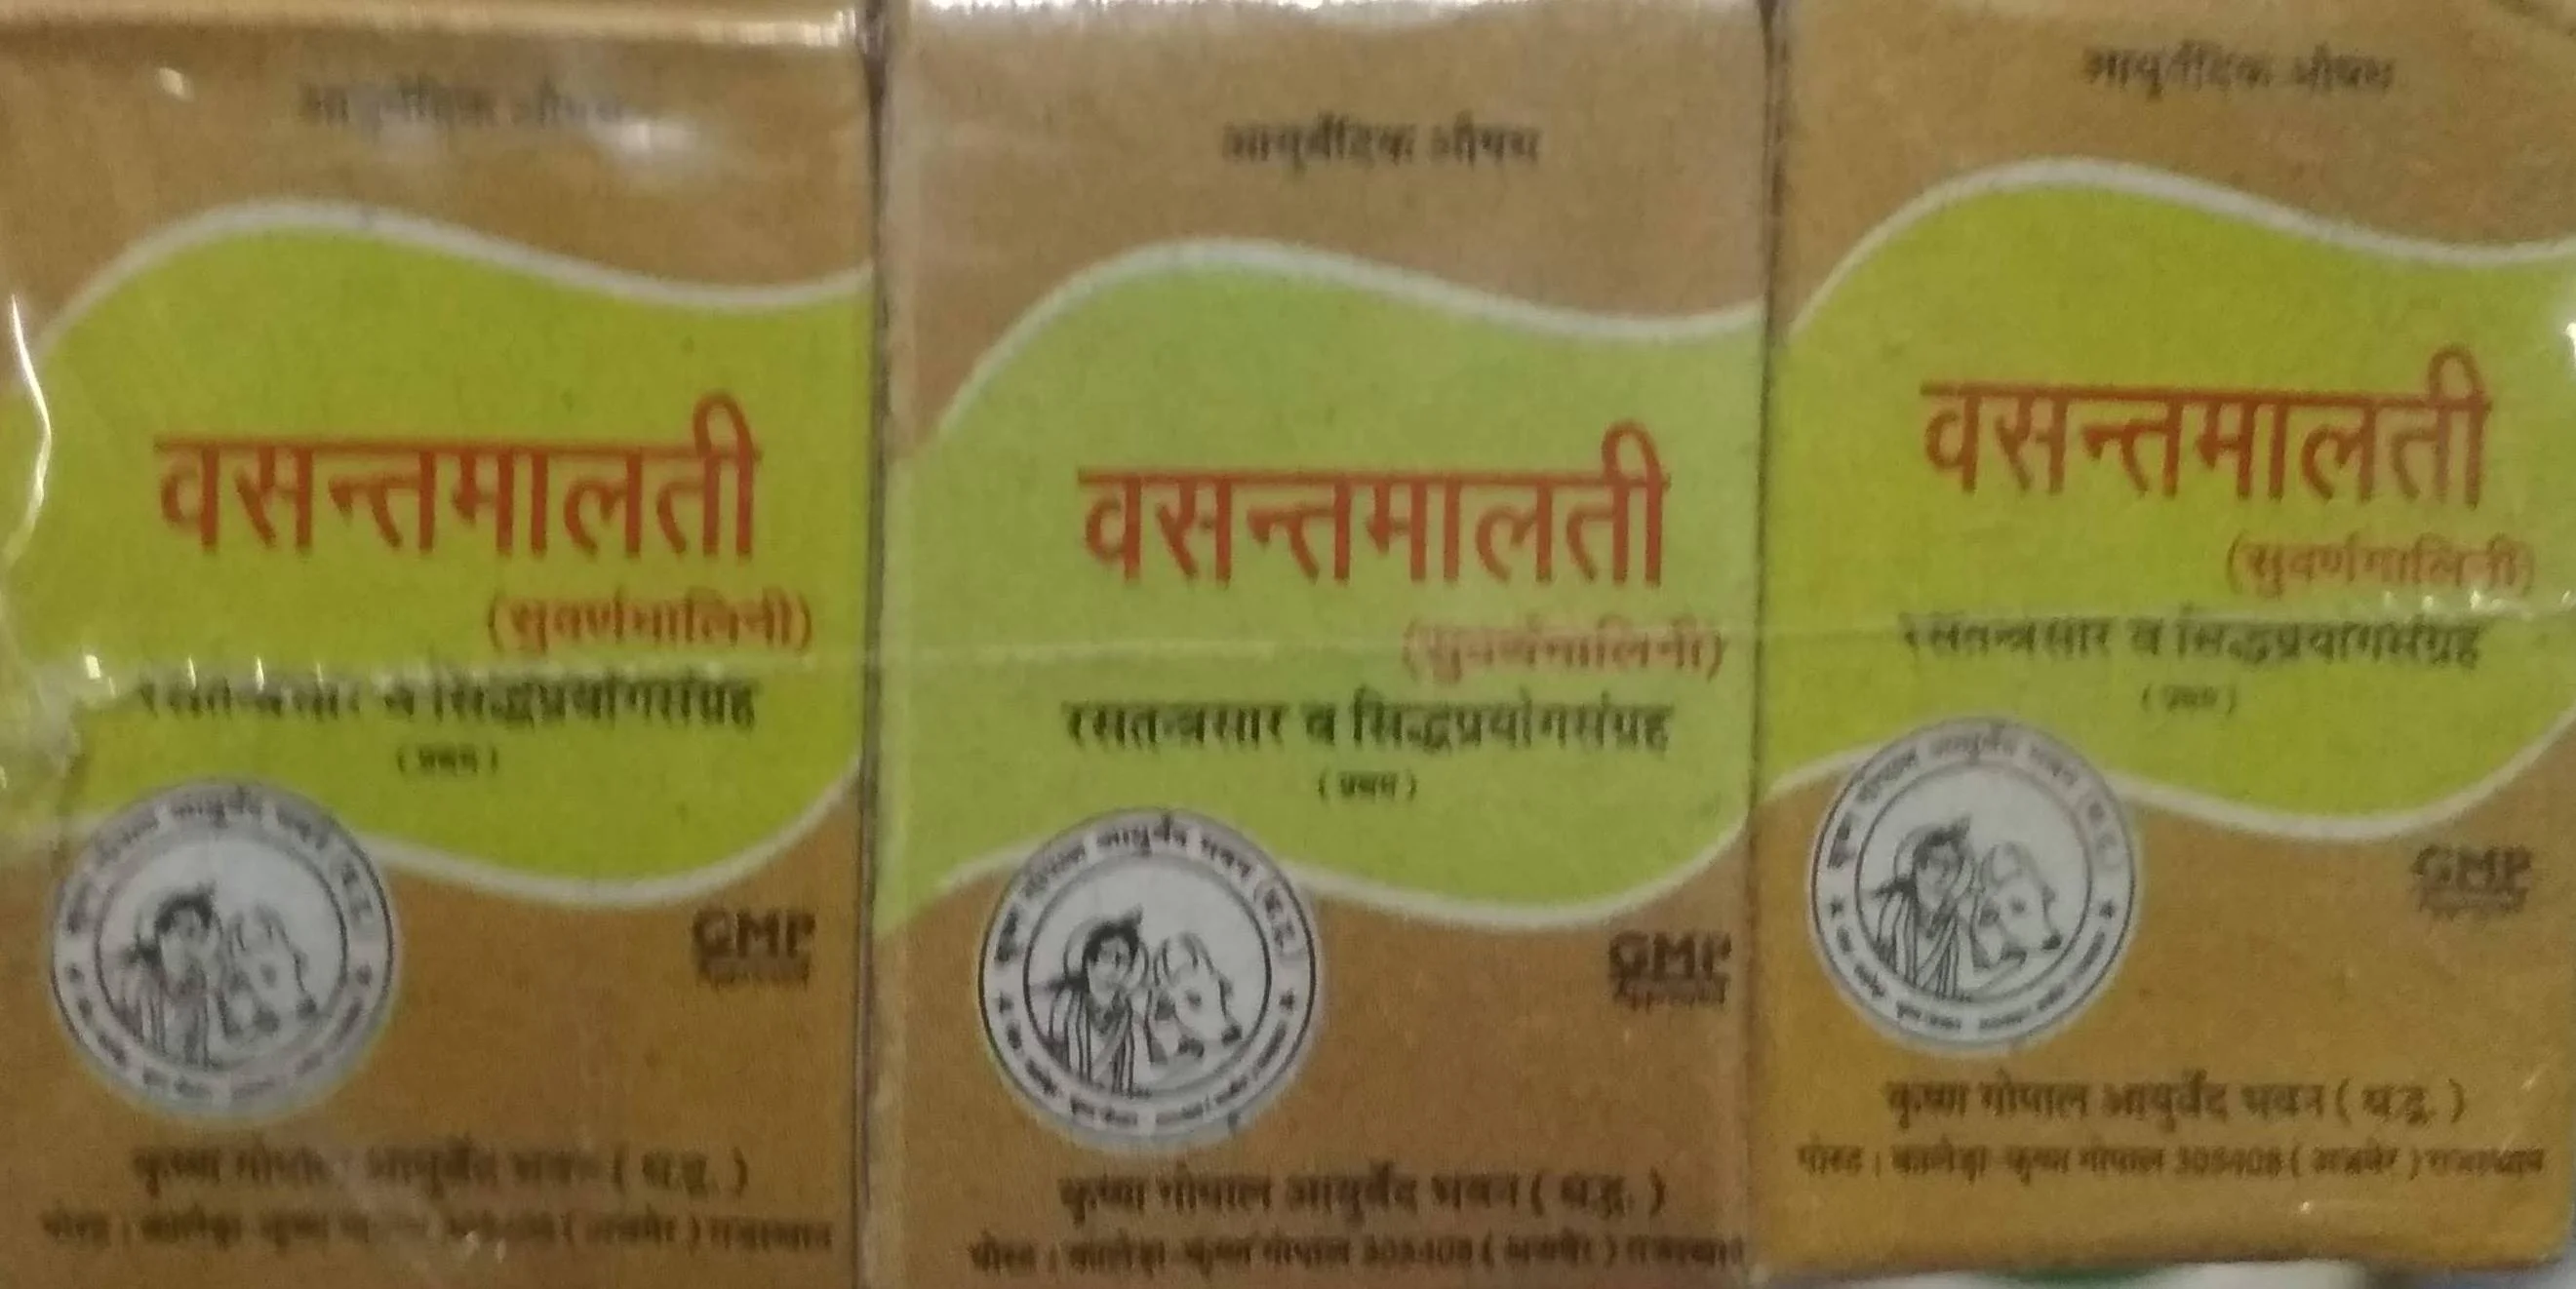 Vasant malati ras swarna yukt 500 mg upto 20% off Krishna Gopal Ayurved bhavan